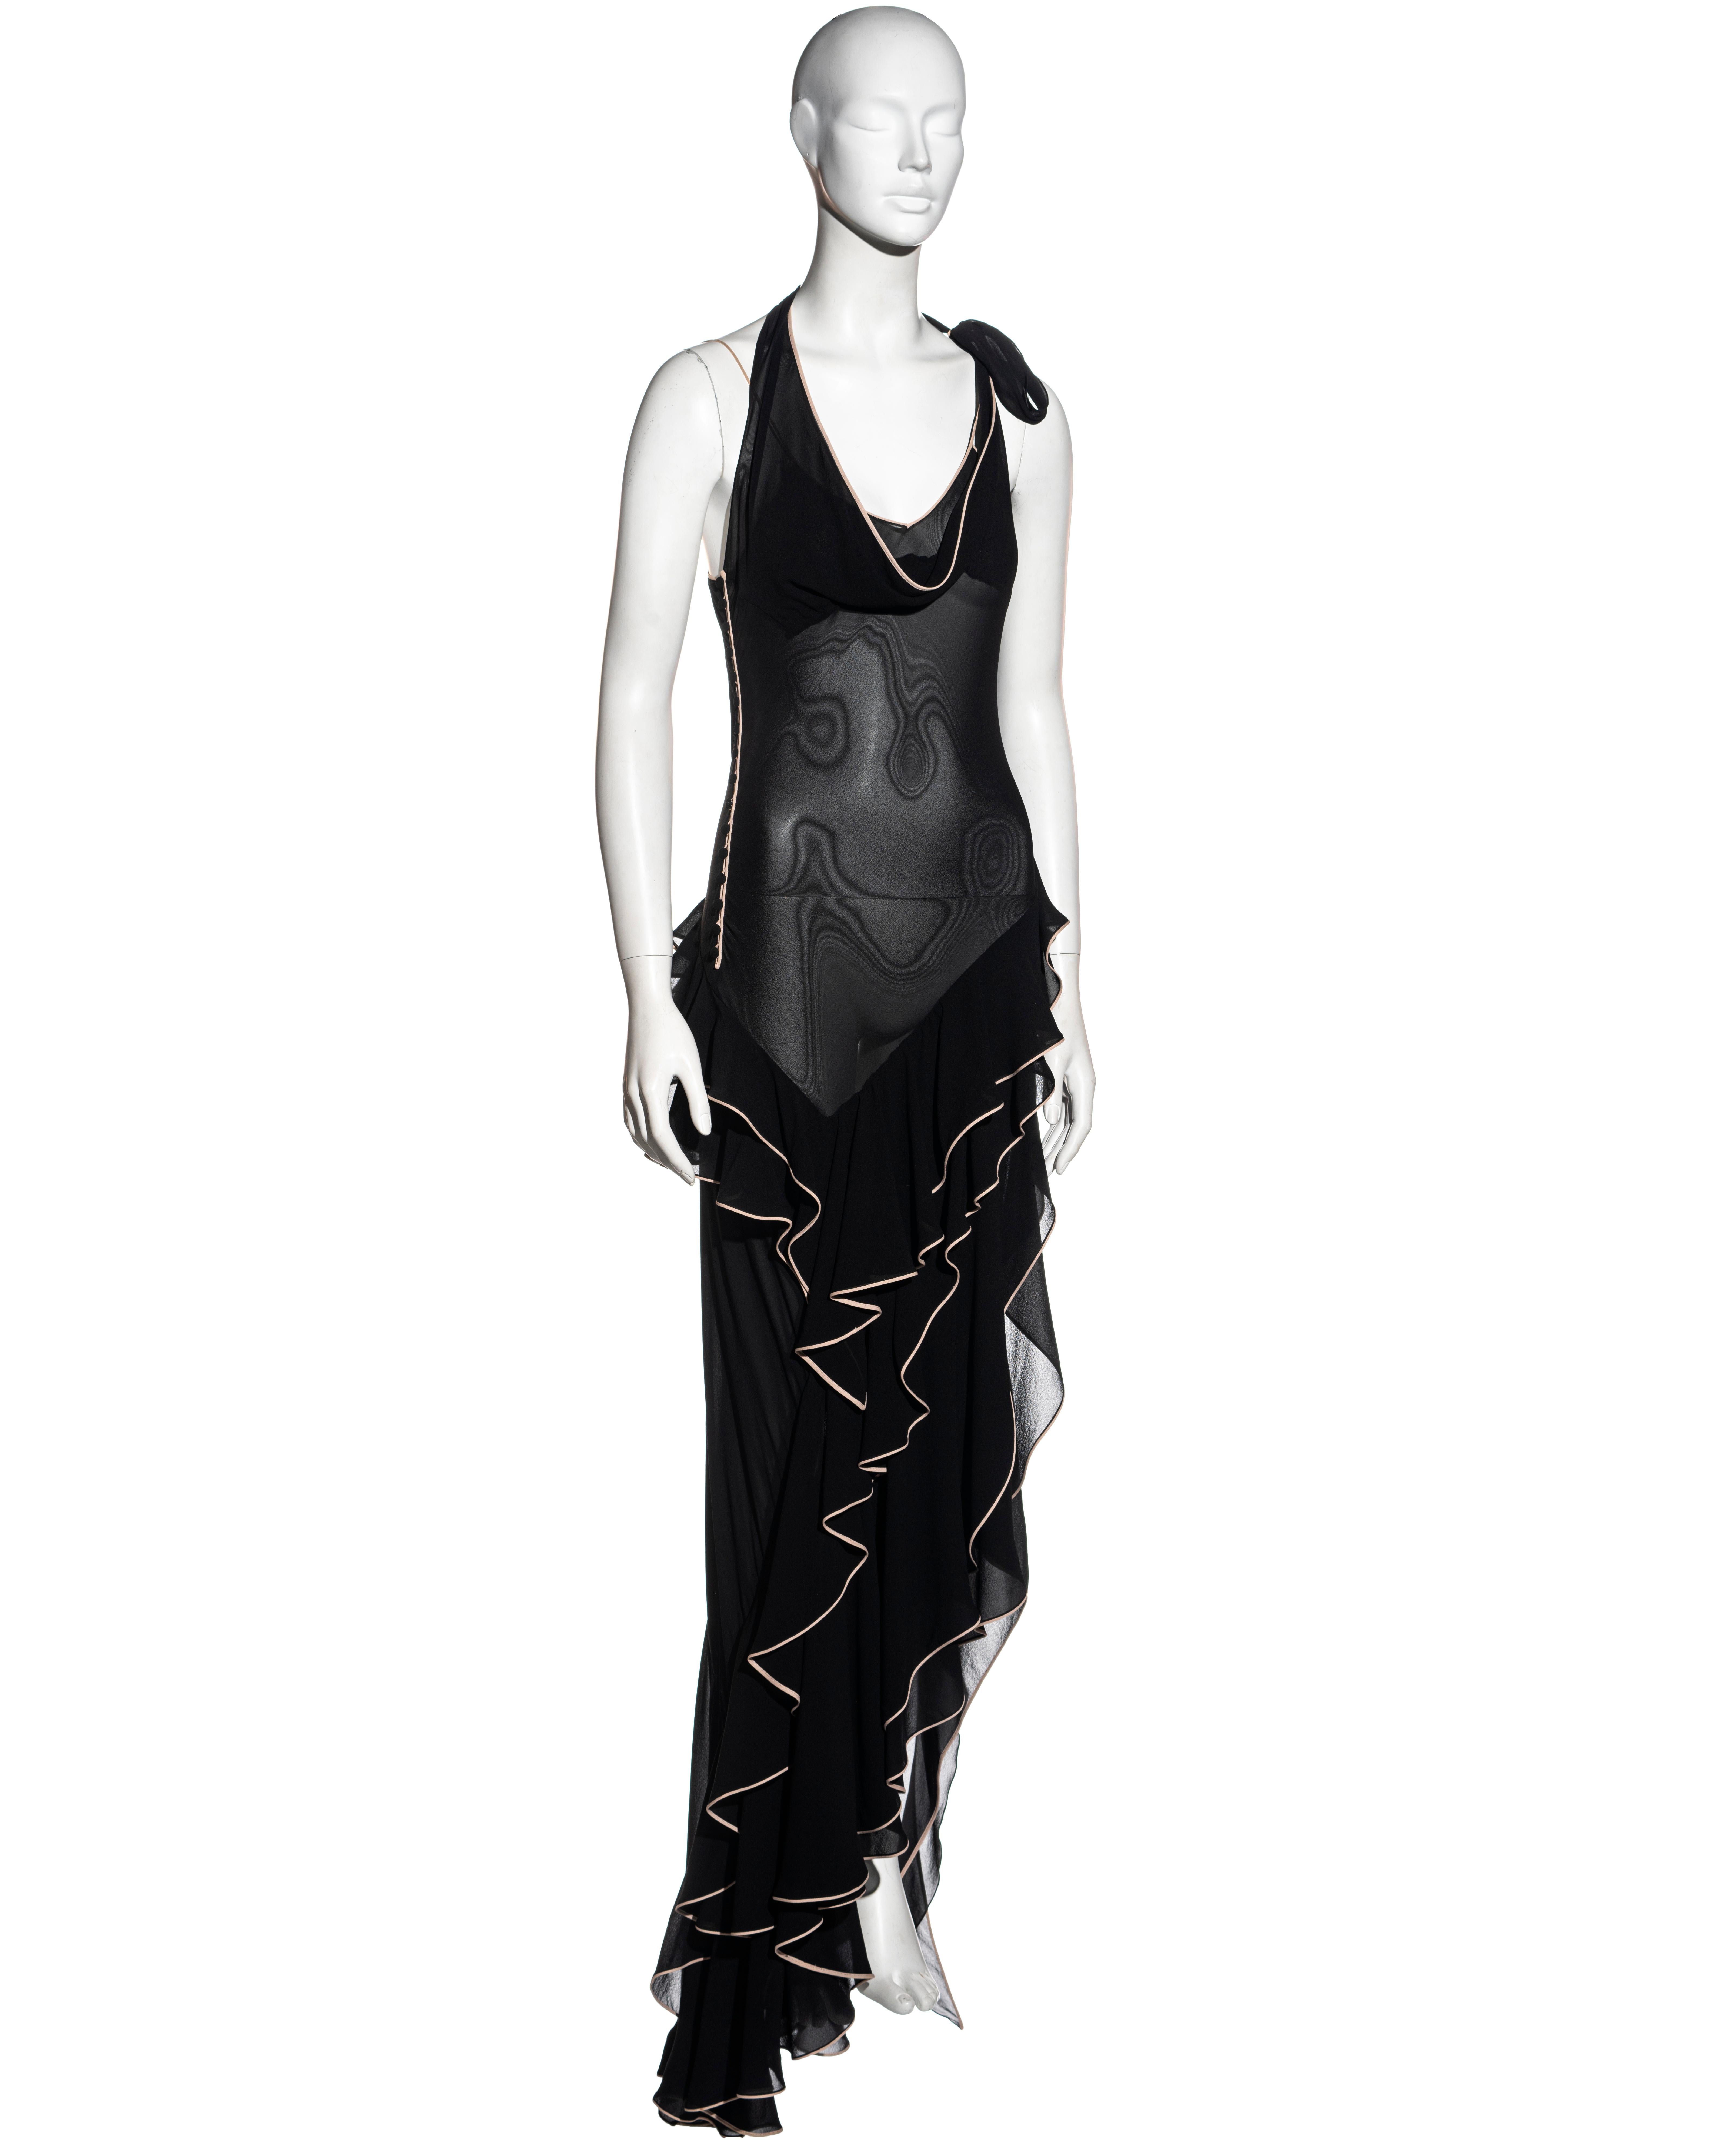 Women's John Galliano black silk chiffon bias cut ruffled evening dress, ss 1995